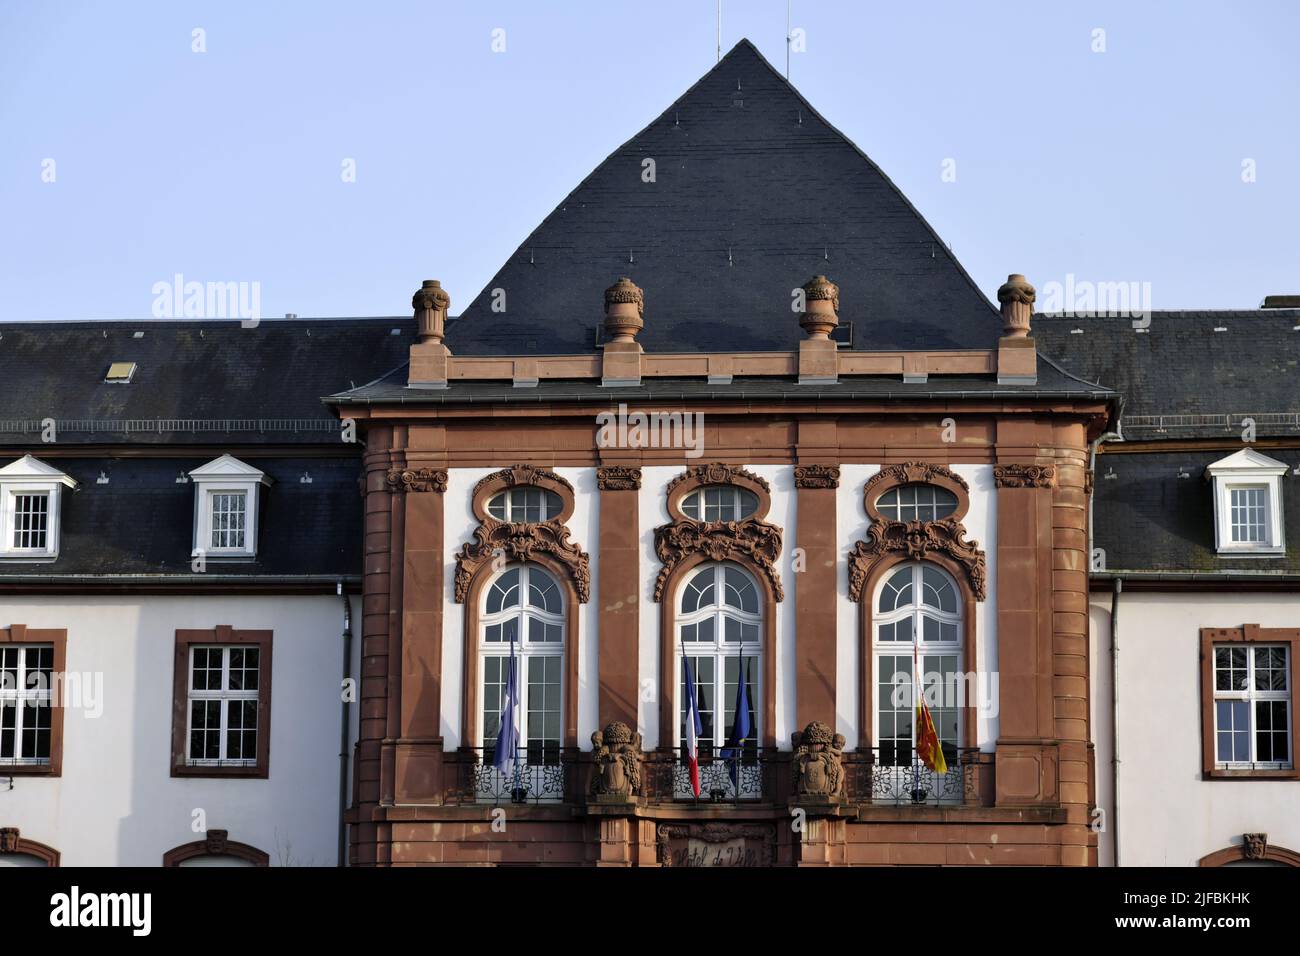 France, Bas Rhin, Haguenau, place de Charles de Gaulle, hôtel de ville daté de 1910 Banque D'Images